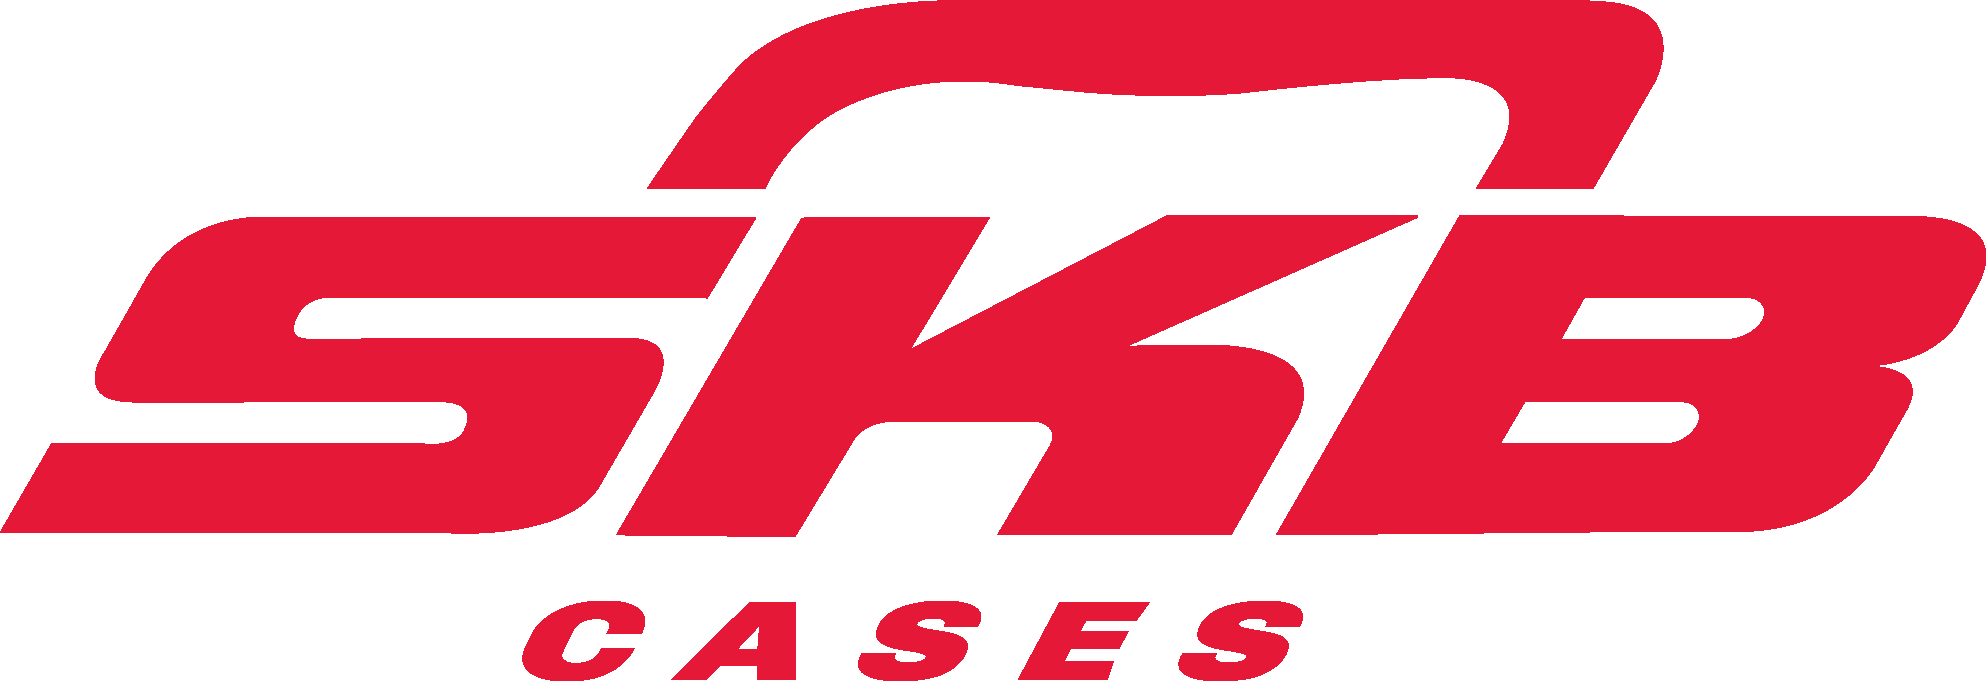 SKB Cases logo